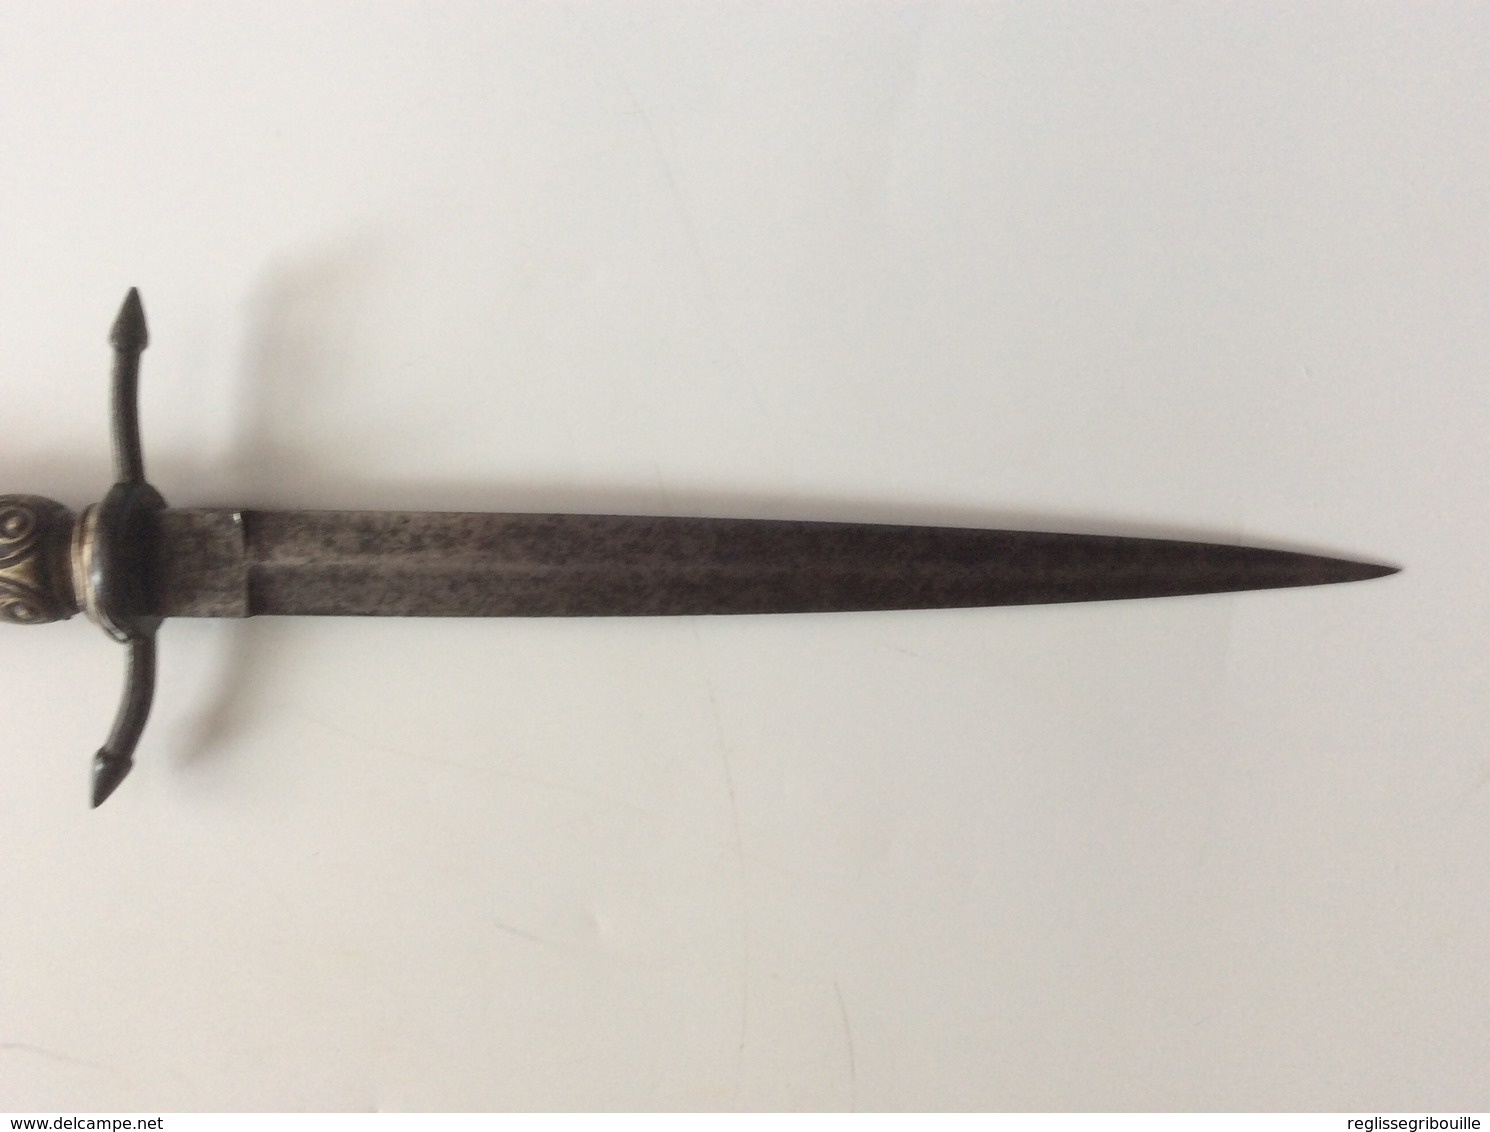 Petite dague longueur totale 310 mm